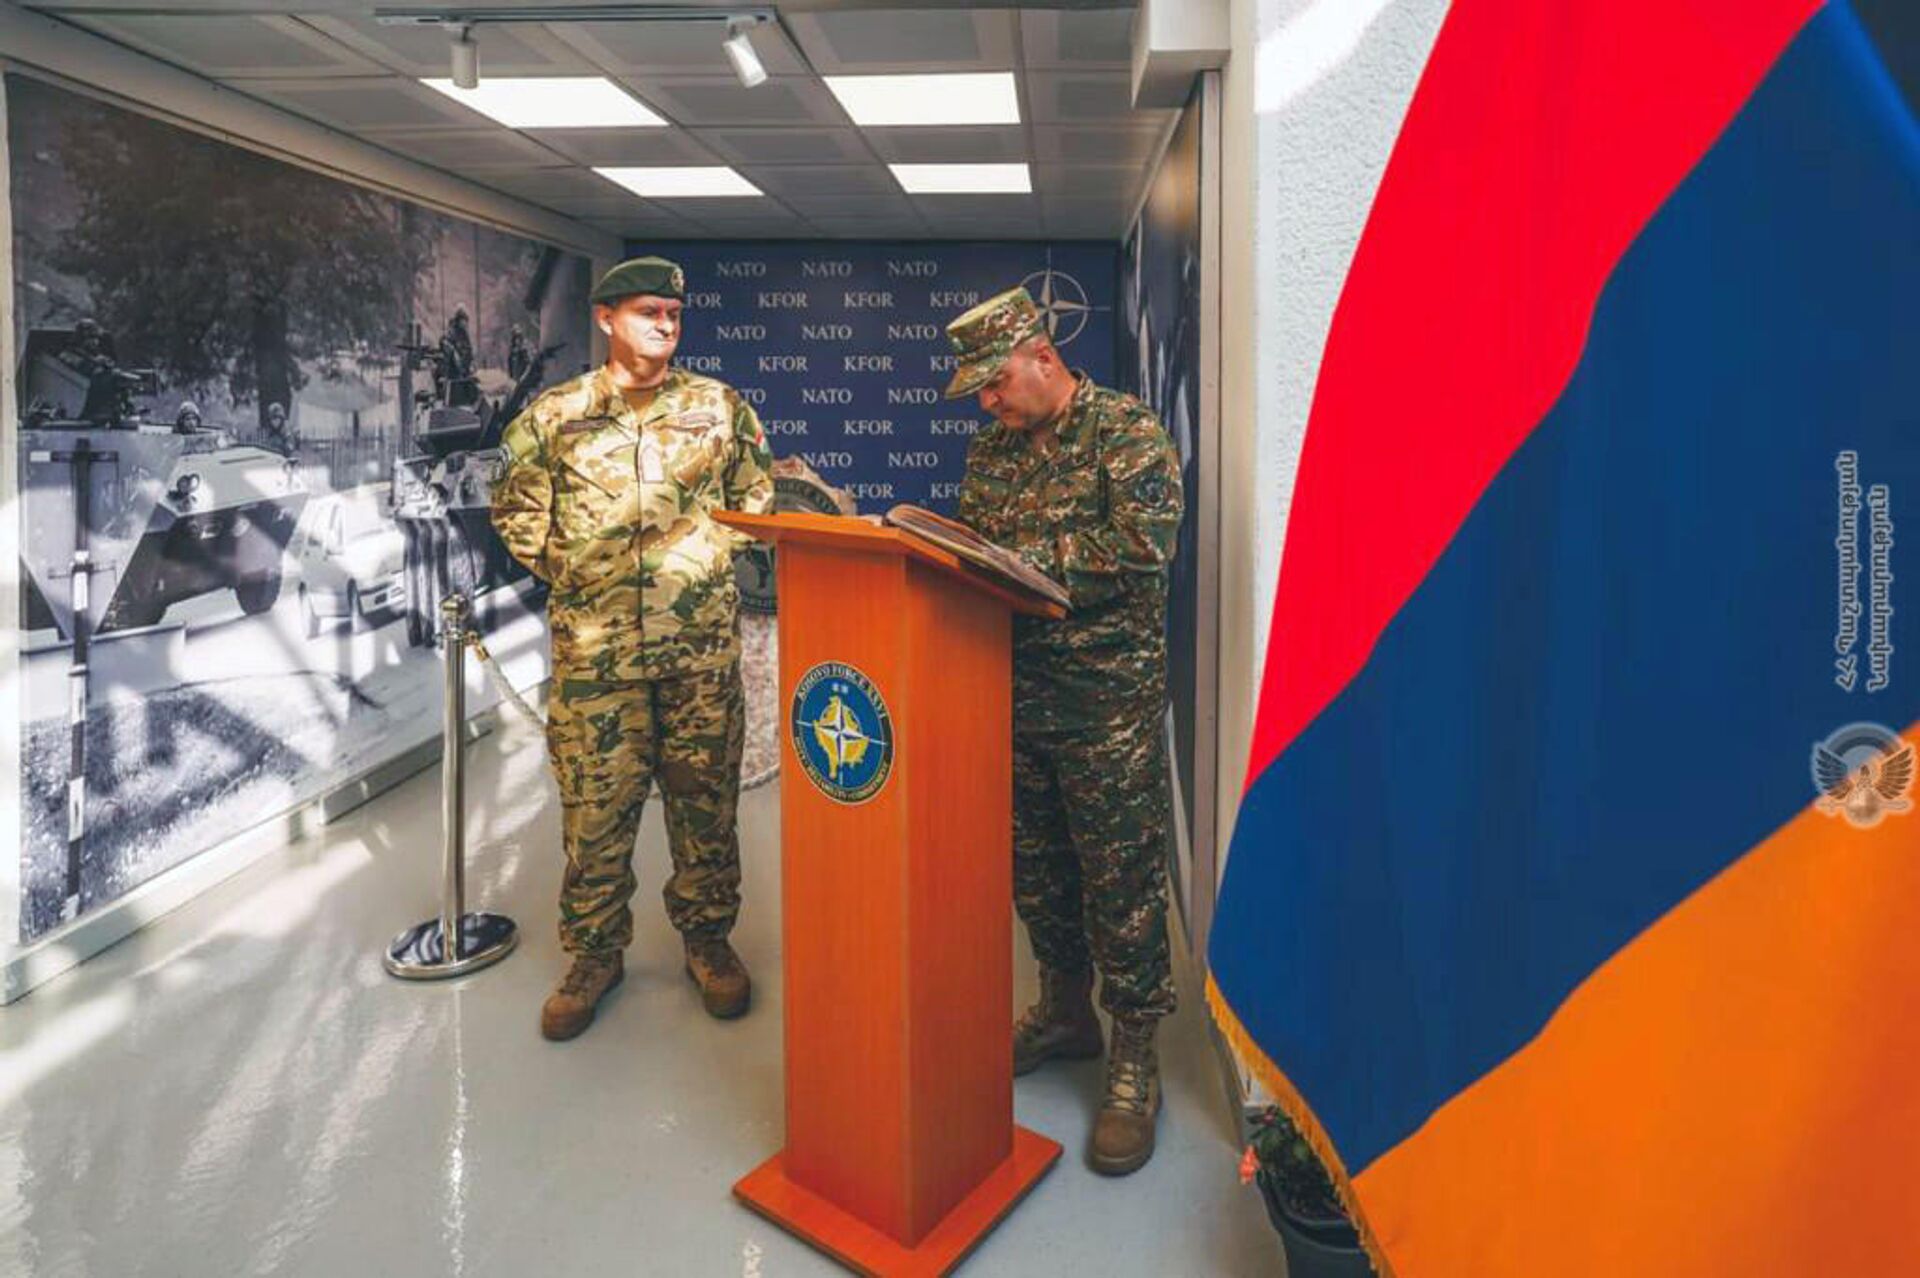 Командующий миротворческой бригадой МО Армении, генерал-майор Артак Тоноян совершил рабочий визит в Косово, встретился с военнослужащими армянского контингента, осуществляющего миротворческую миссию, ознакомился с условиями их пребывания - Sputnik Армения, 1920, 24.11.2021